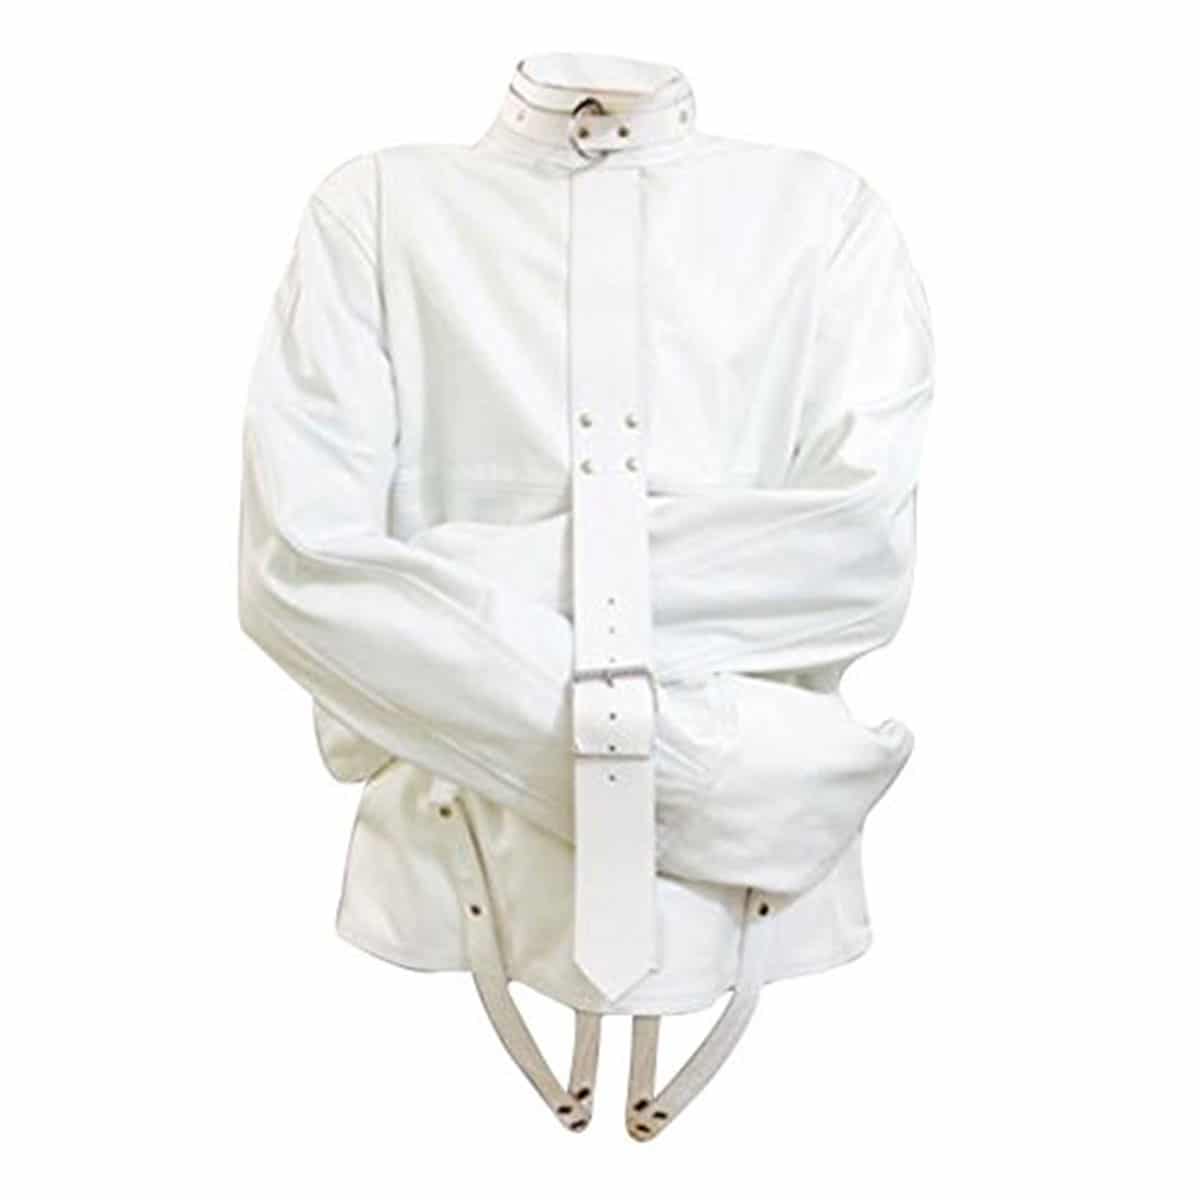 Mens Strait Jacket White Leather Bondage Fetish With Choice Of Lining - SJ - WHT